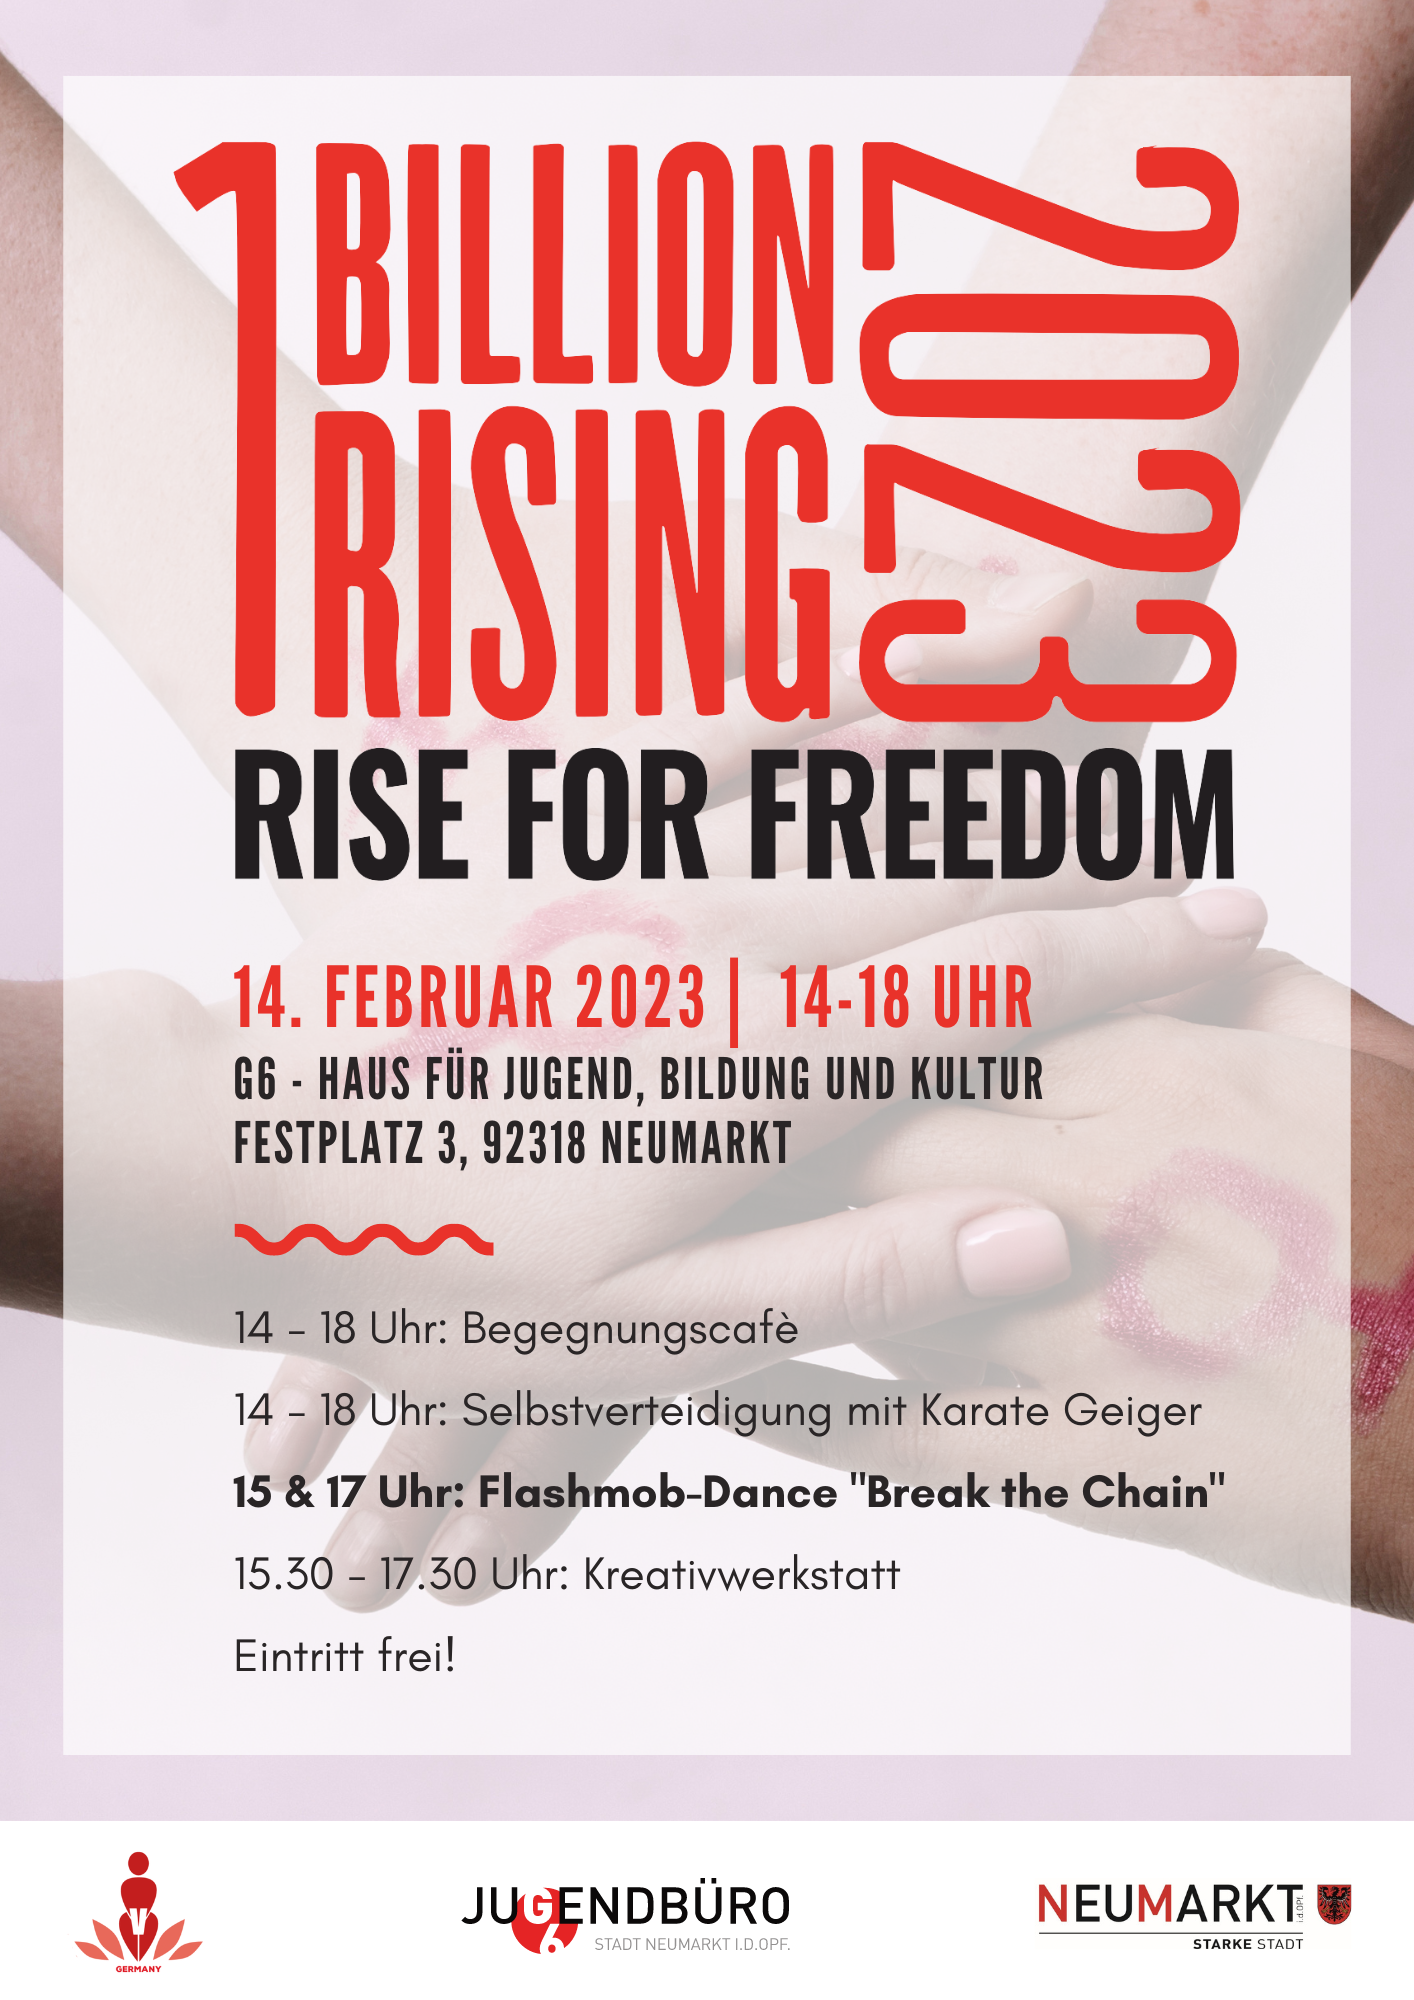 „One Billion Rising“ in Neumarkt im G6